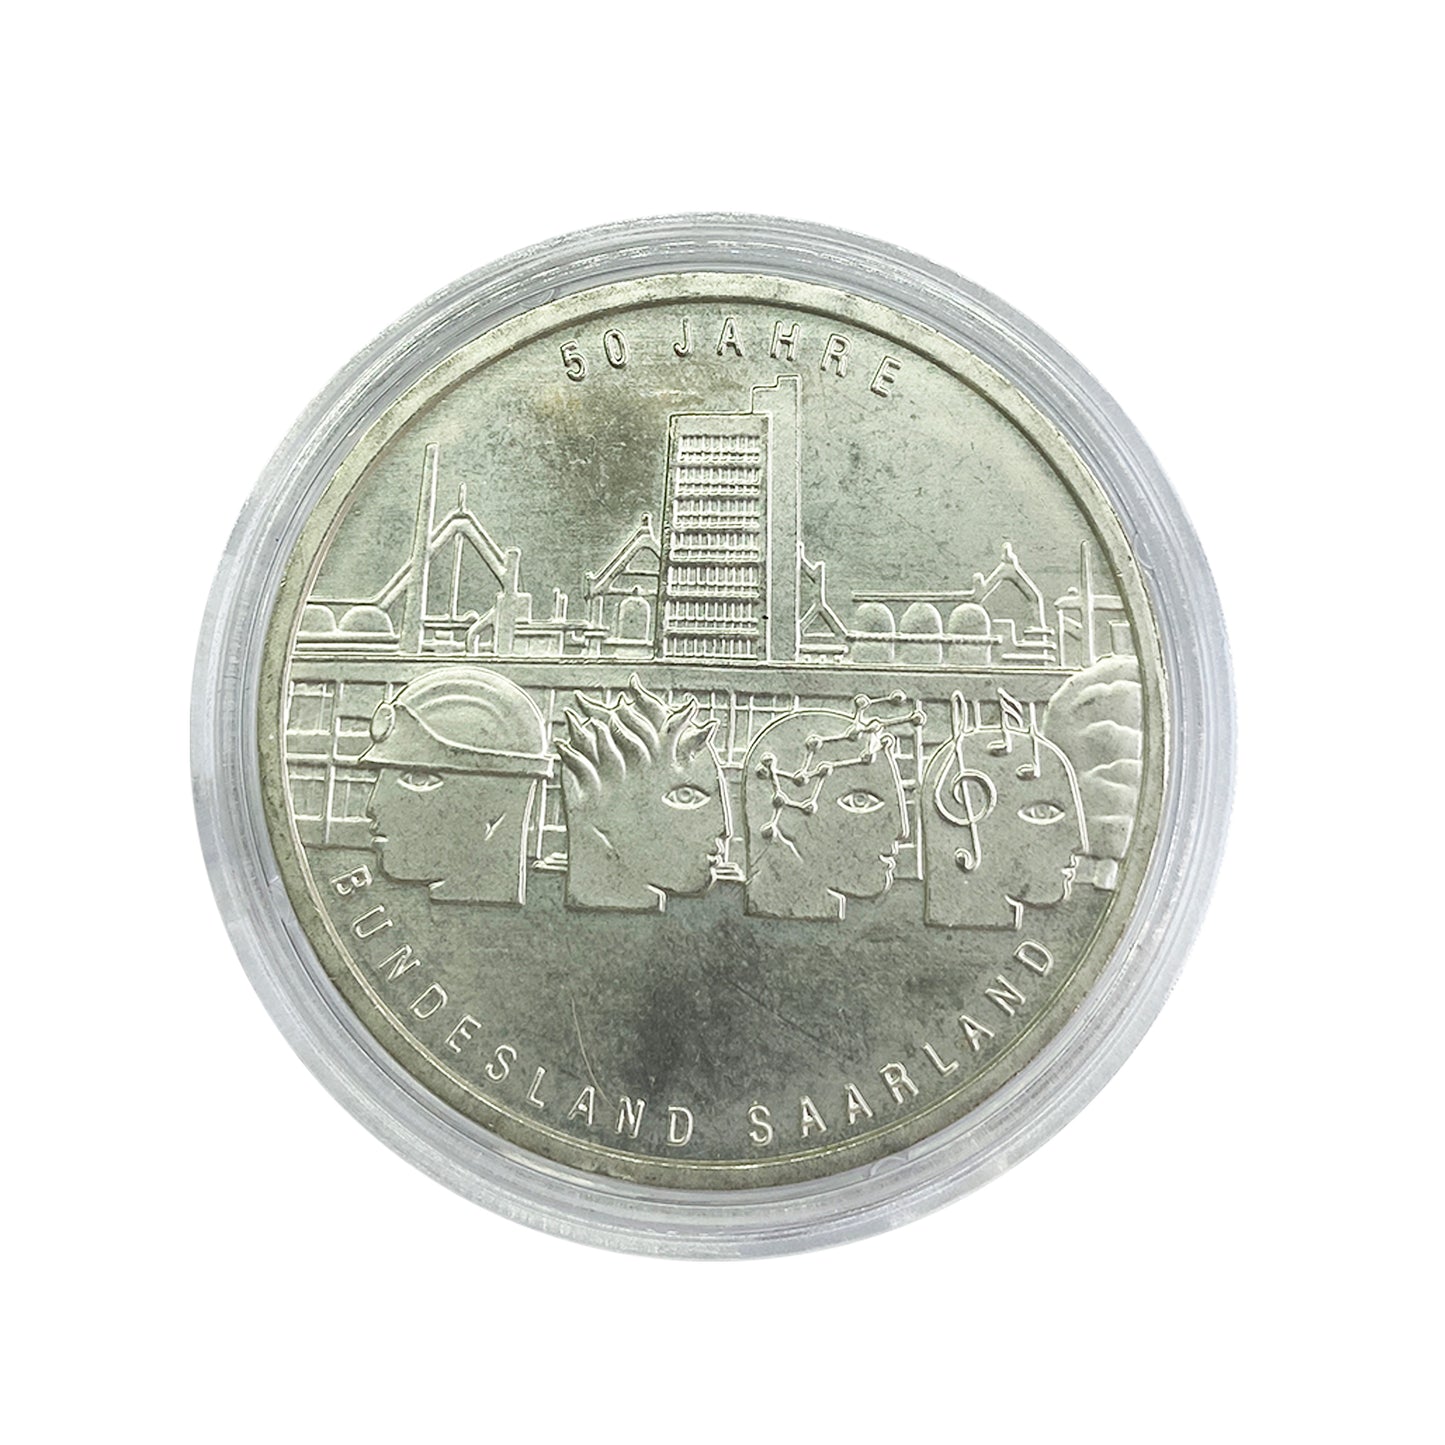 Alemania - Moneda 10 euros plata 2007 -  Estado federado del Sarre